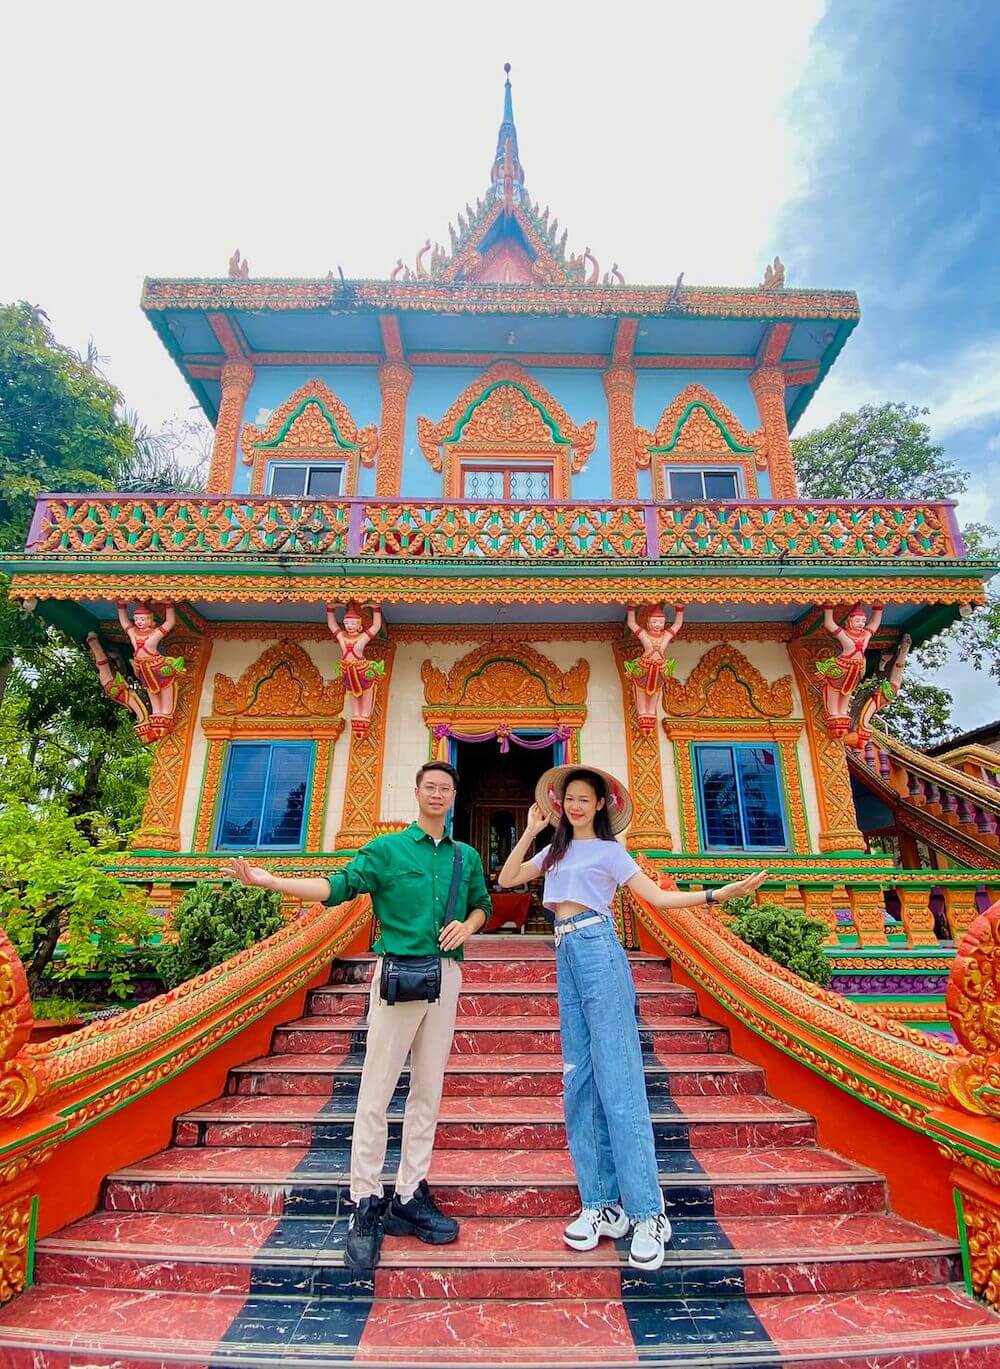 Chùa Chén Kiểu cũng là địa điểm du lịch đẹp và nổi tiếng ở Sóc Trăng có nhiều góc check in đẹp